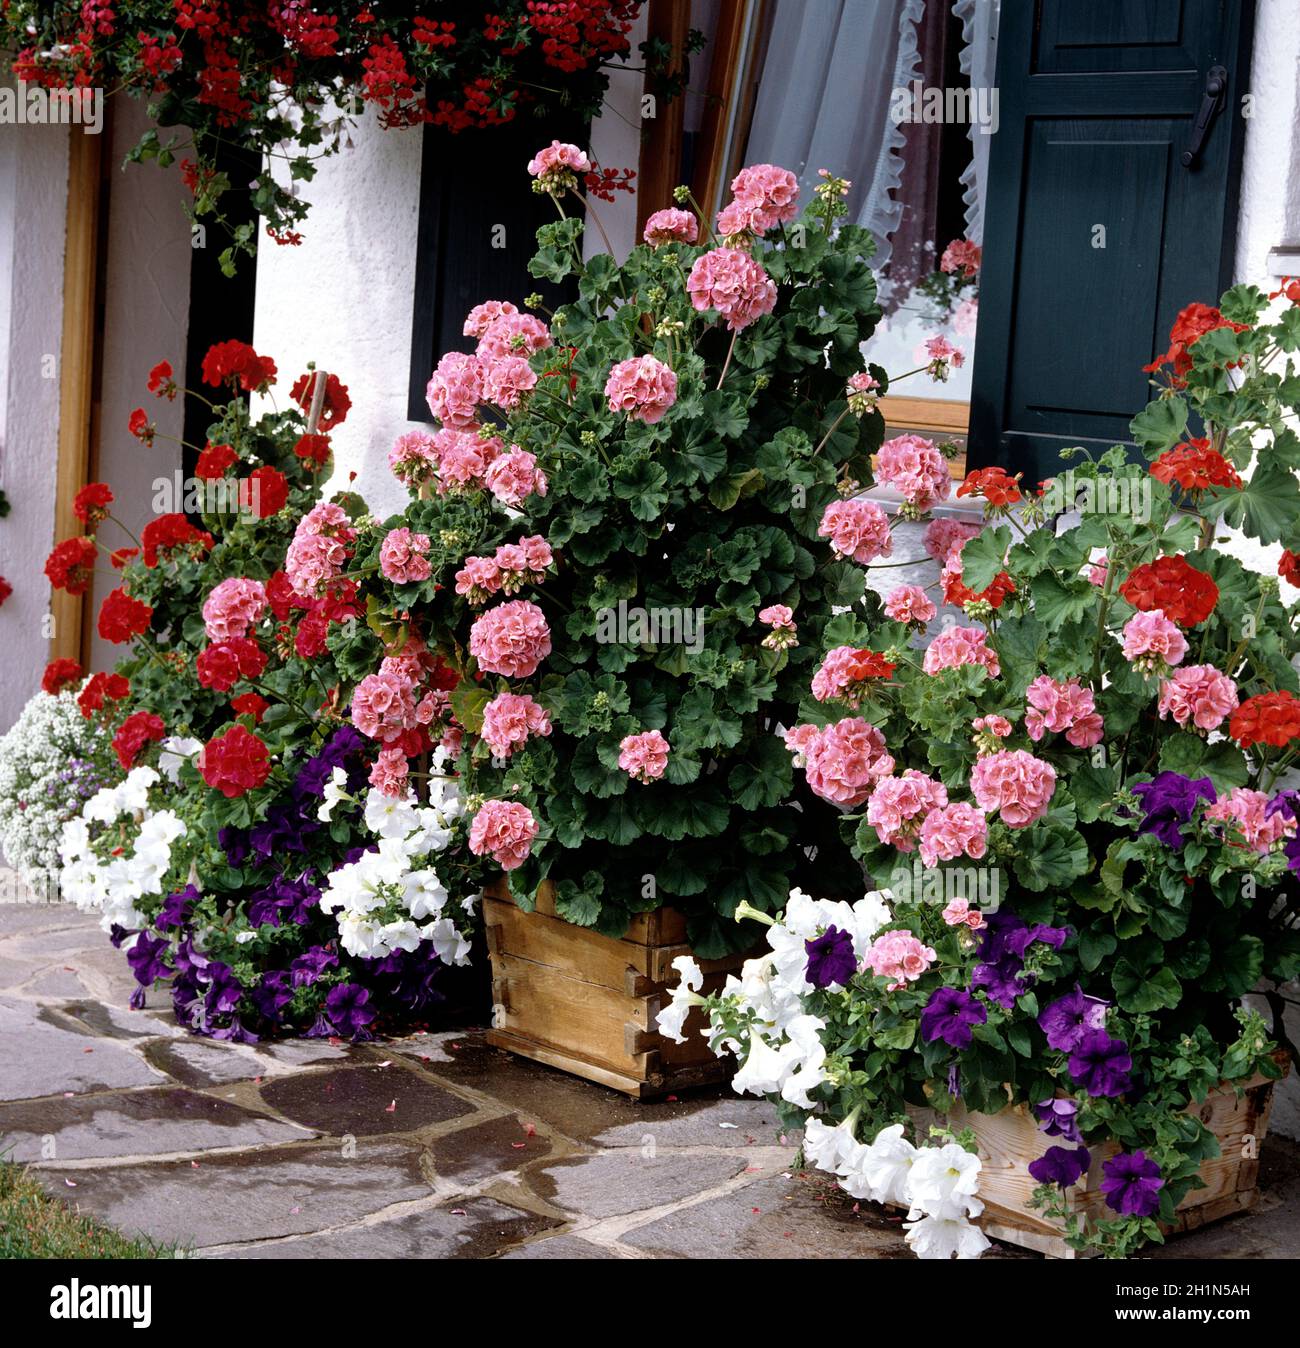 Balkonblumen, Blumen im Kasten, Petunie, Surfina, Bidens, Balkonblumen, Blumen auf Terrasse, Gartenblumen, Kübelpflanzen Foto Stock